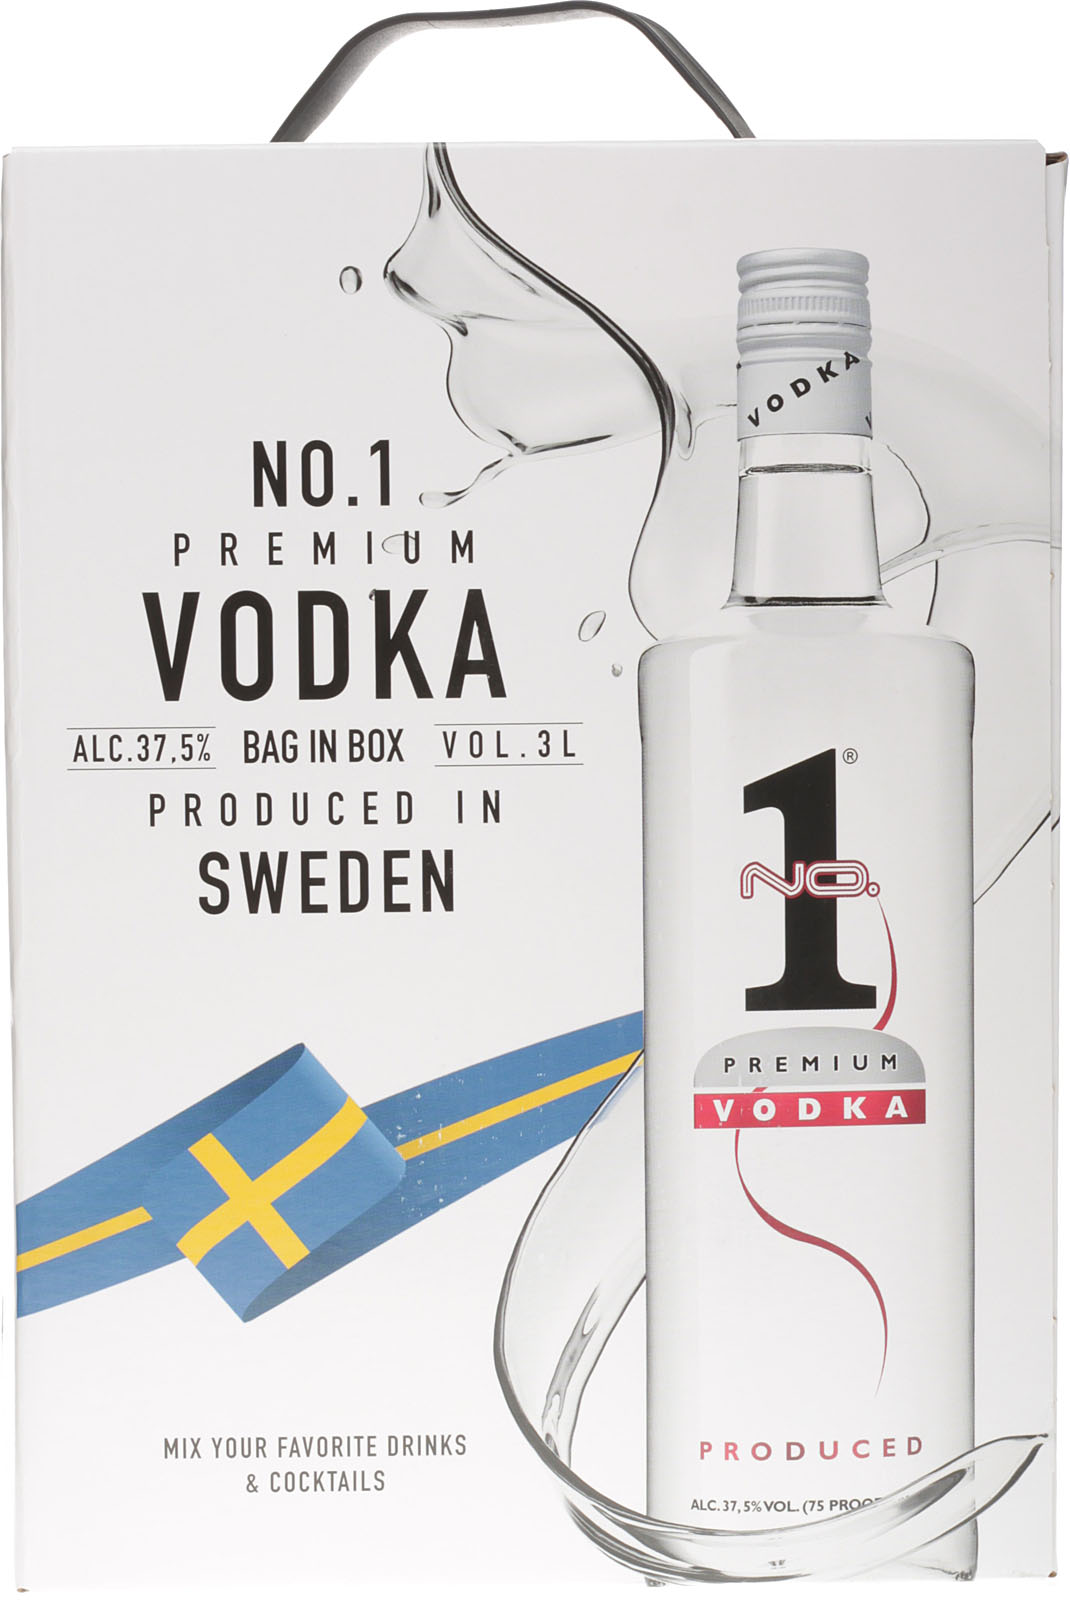 No. 1 Premium Vodka Bag bei % 3 Vol. Liter Box in 37,5